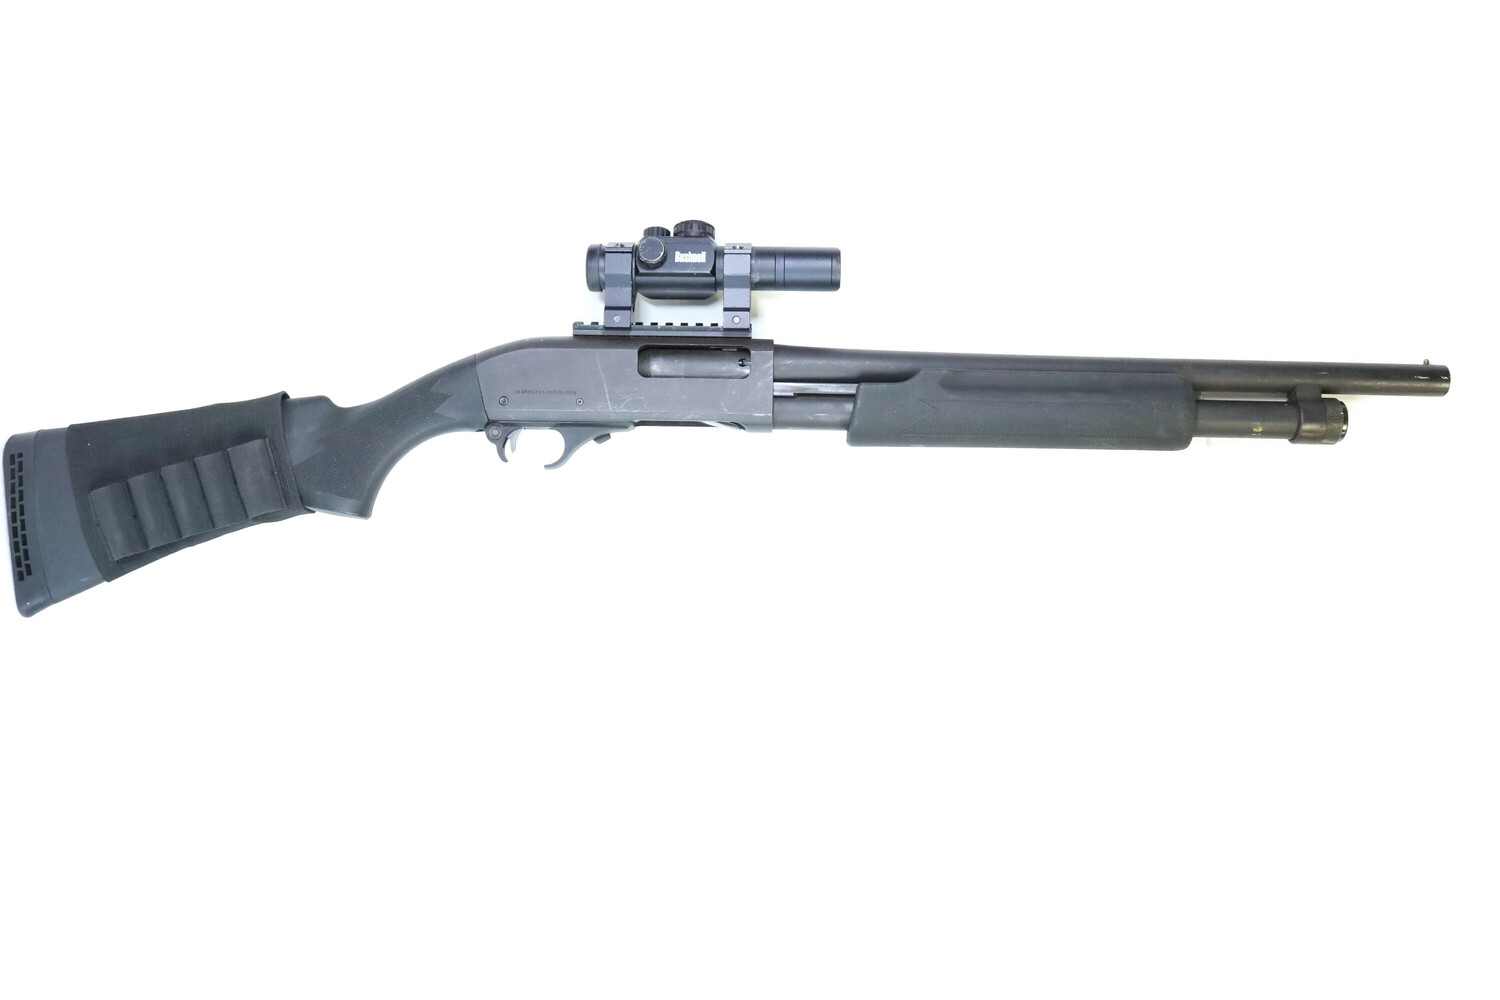 I.A.C. Hawk Model 981 12GA Pump Action Shotgun